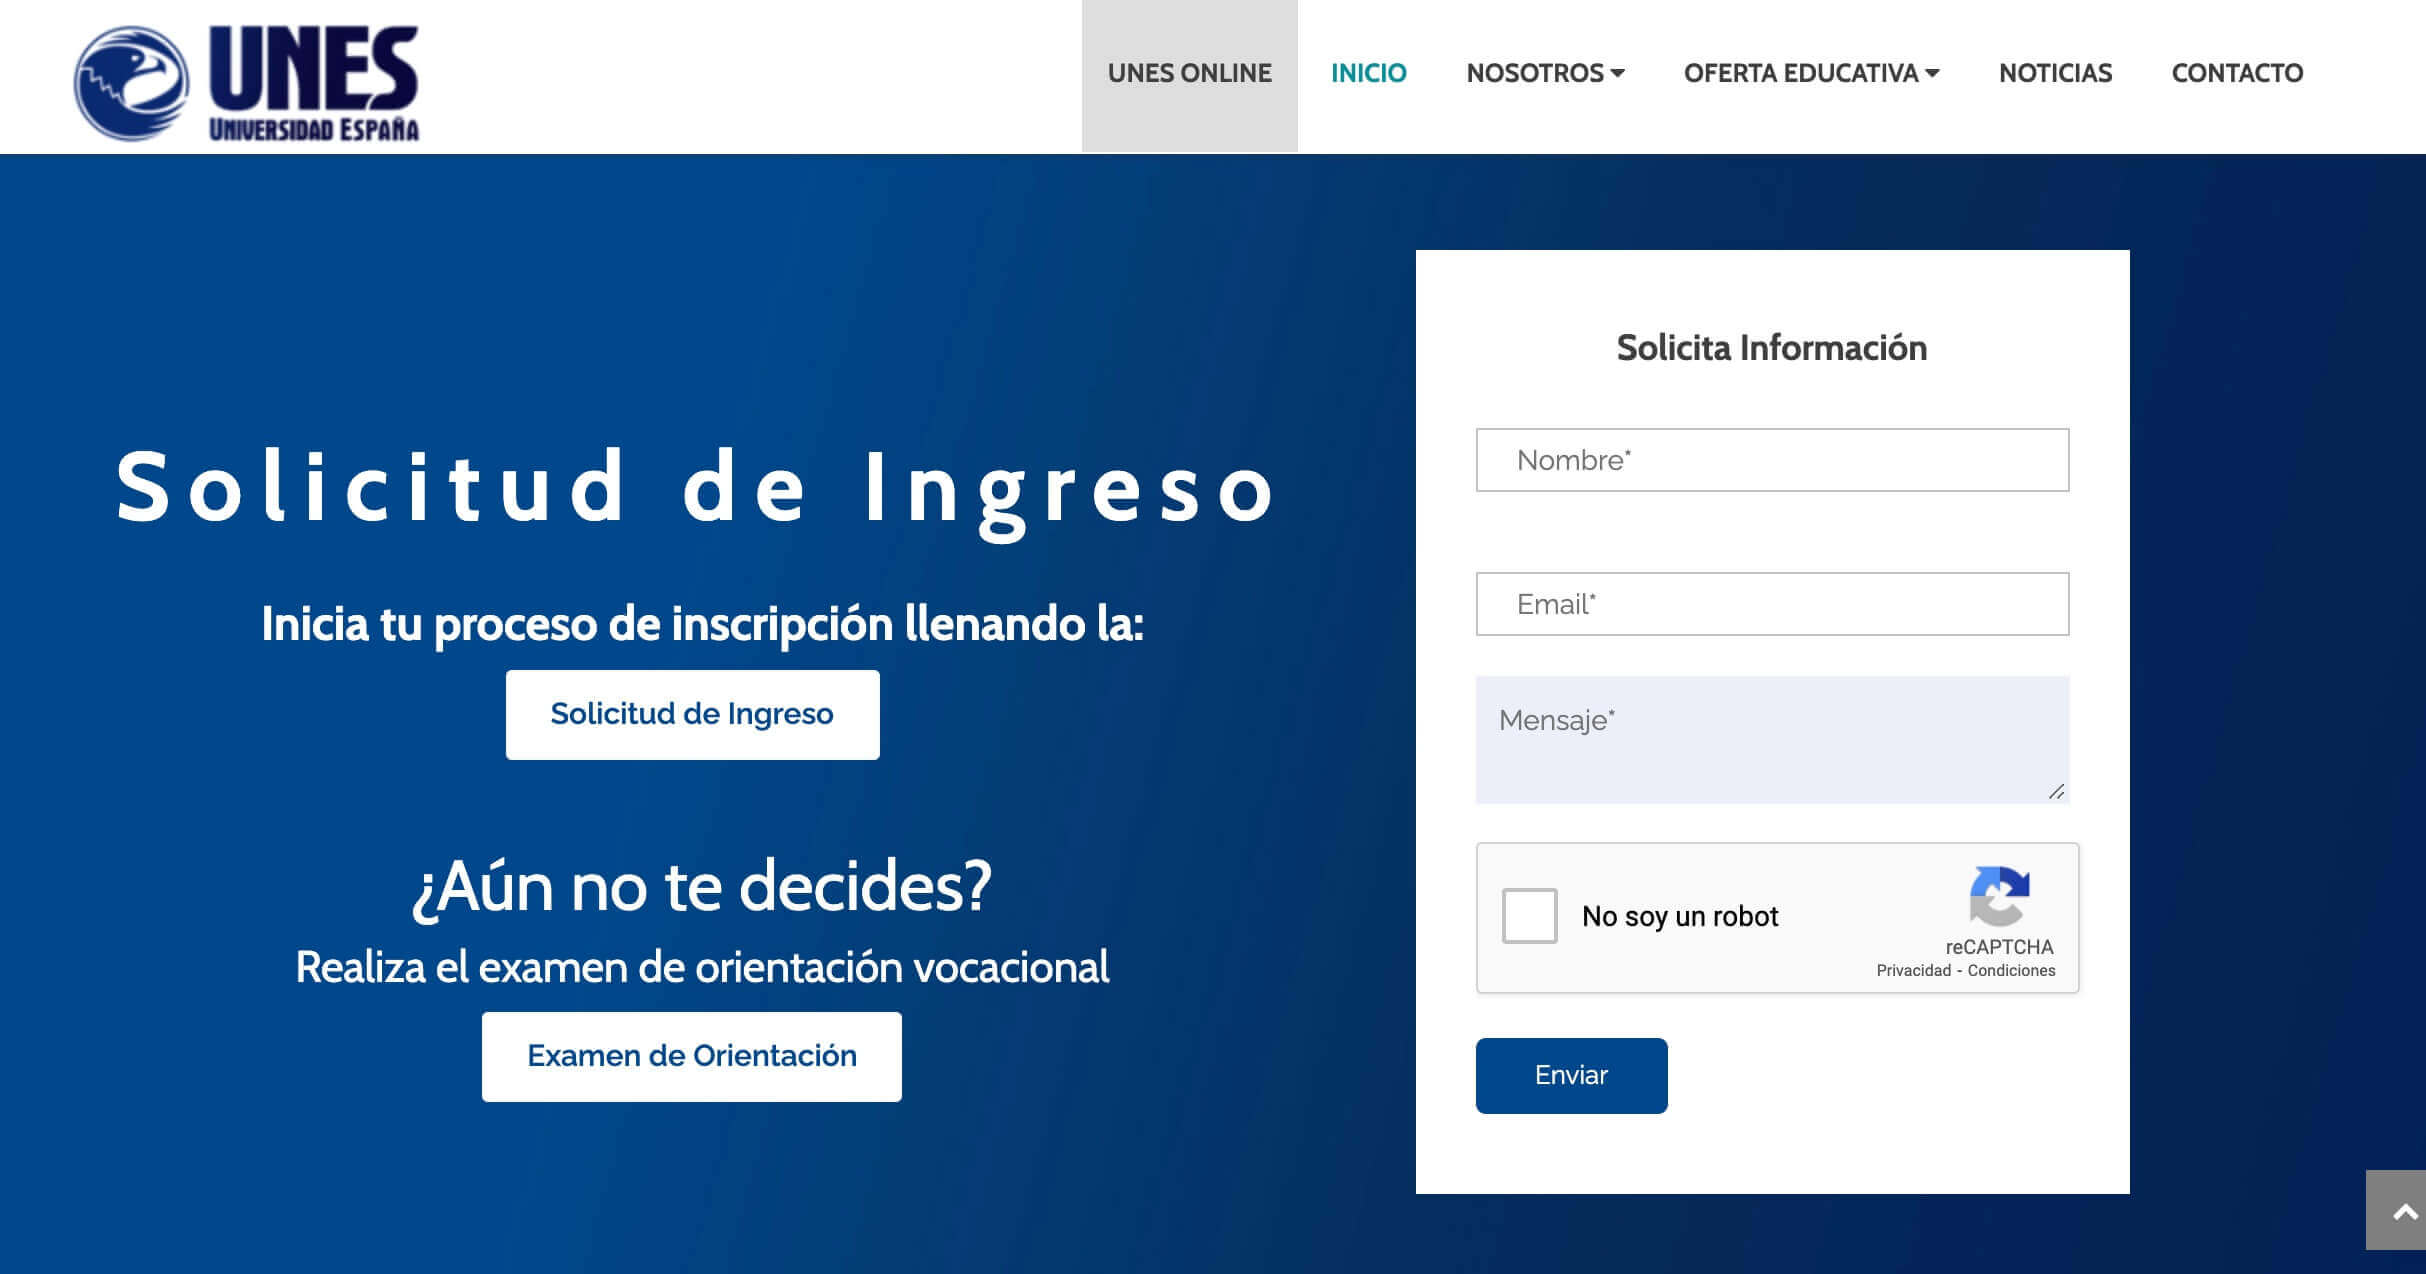 Ejemplos de landing page: Universidad España